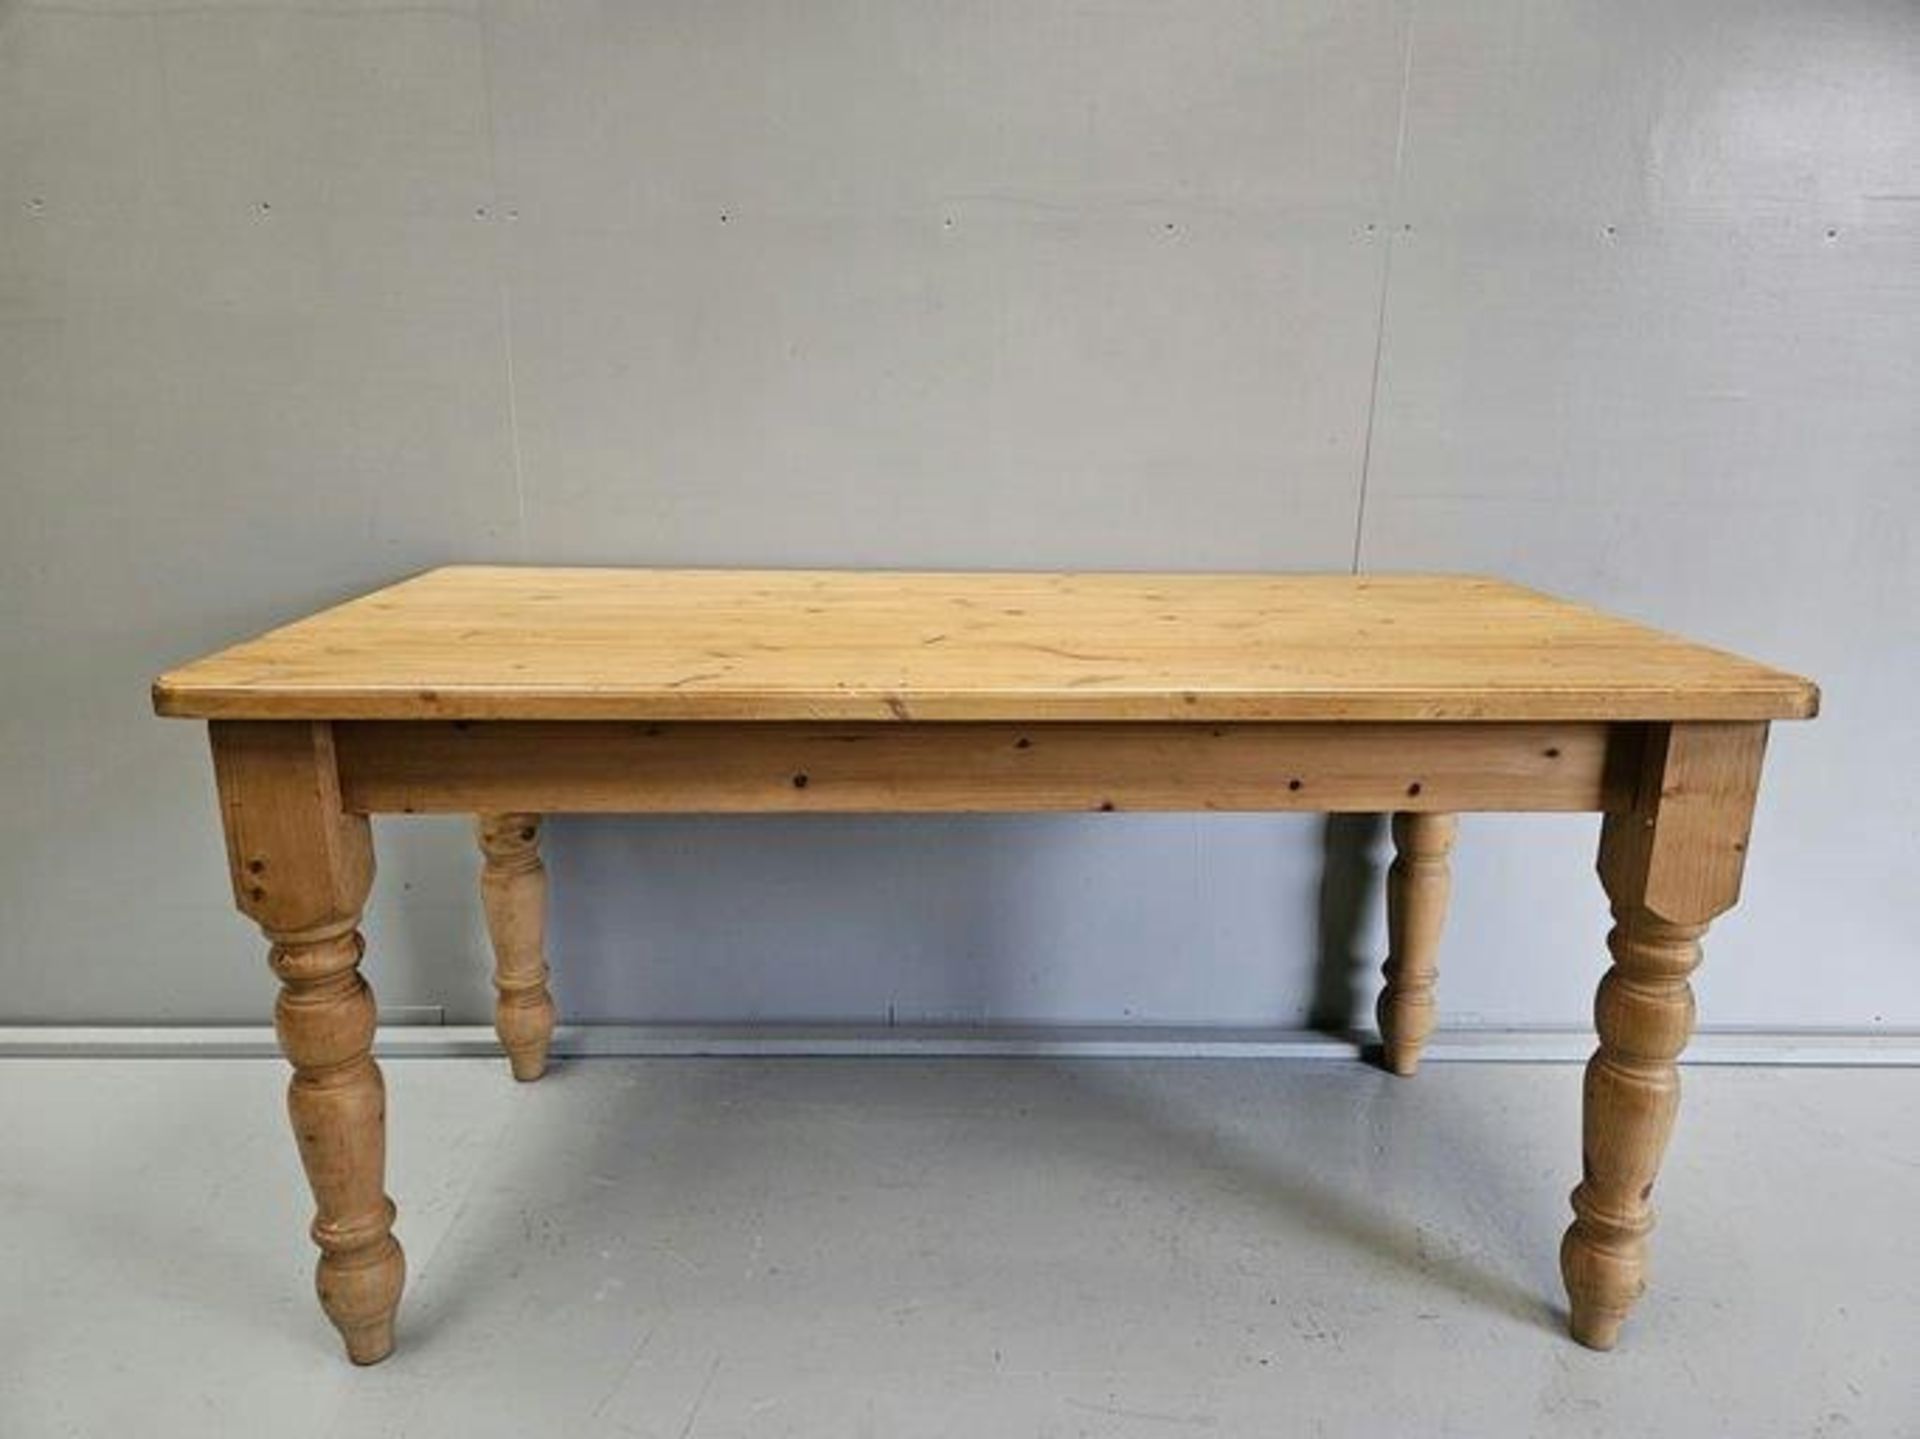 Pine Kitchen Table H77cm L148cm W76cm - Image 2 of 2